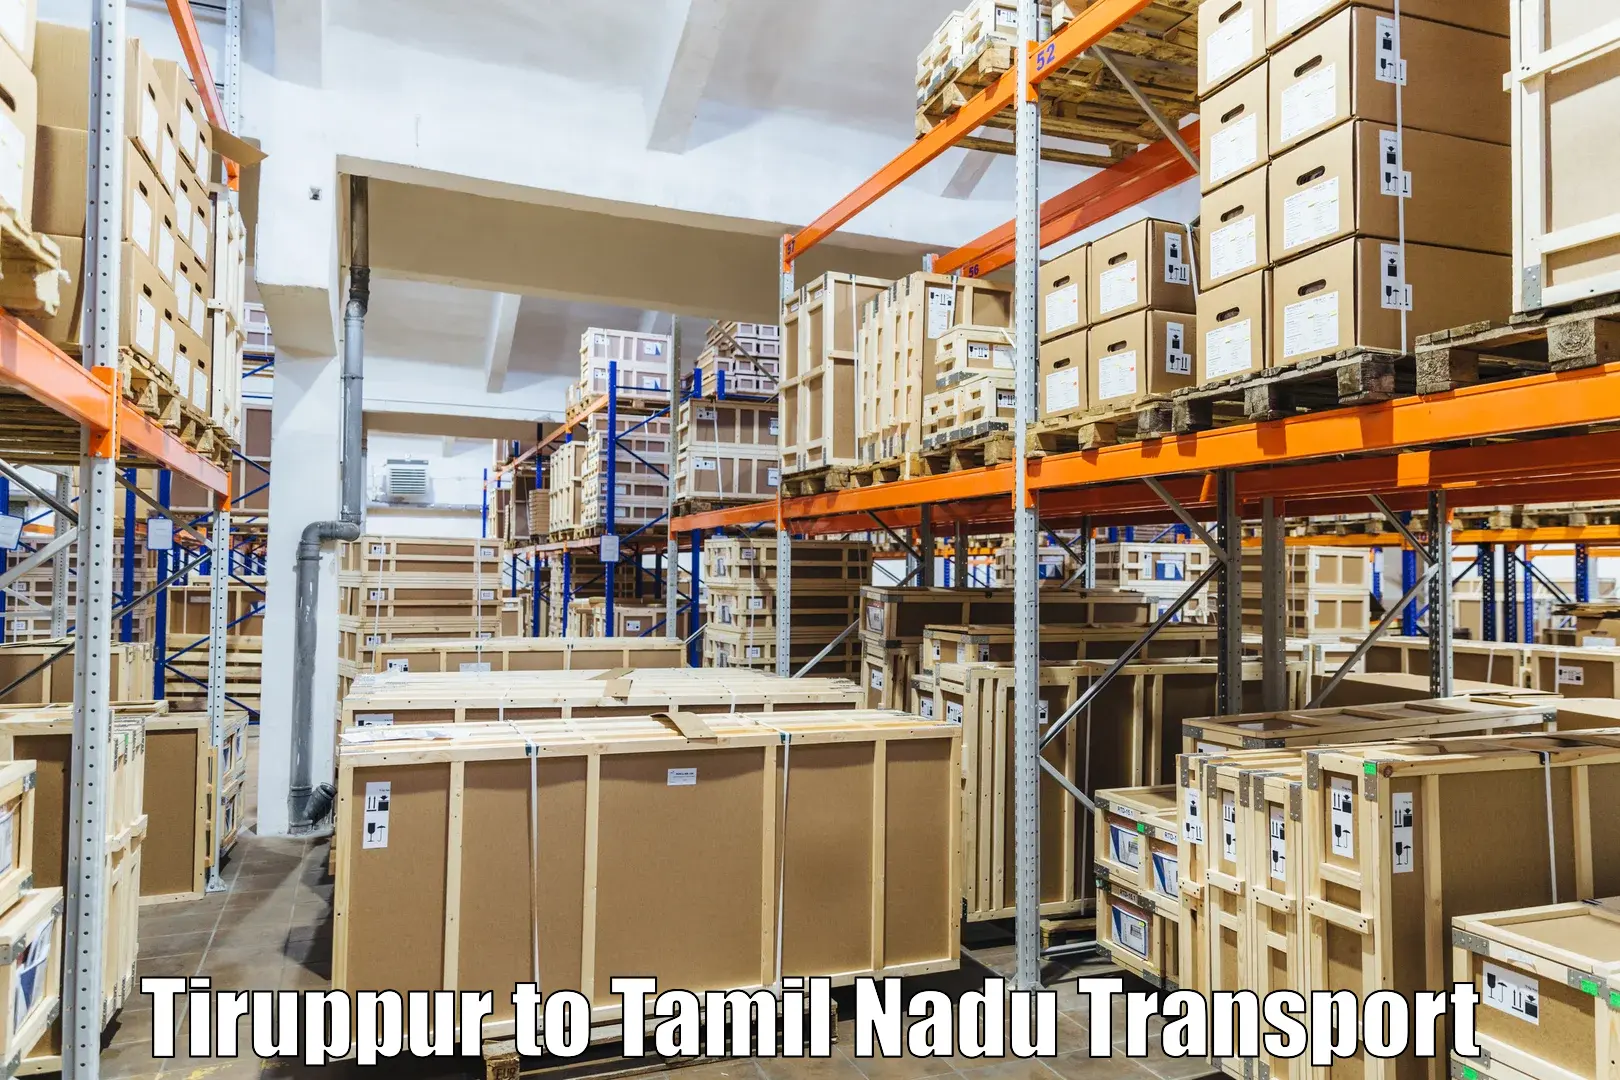 Container transport service in Tiruppur to The Gandhigram Rural Institute